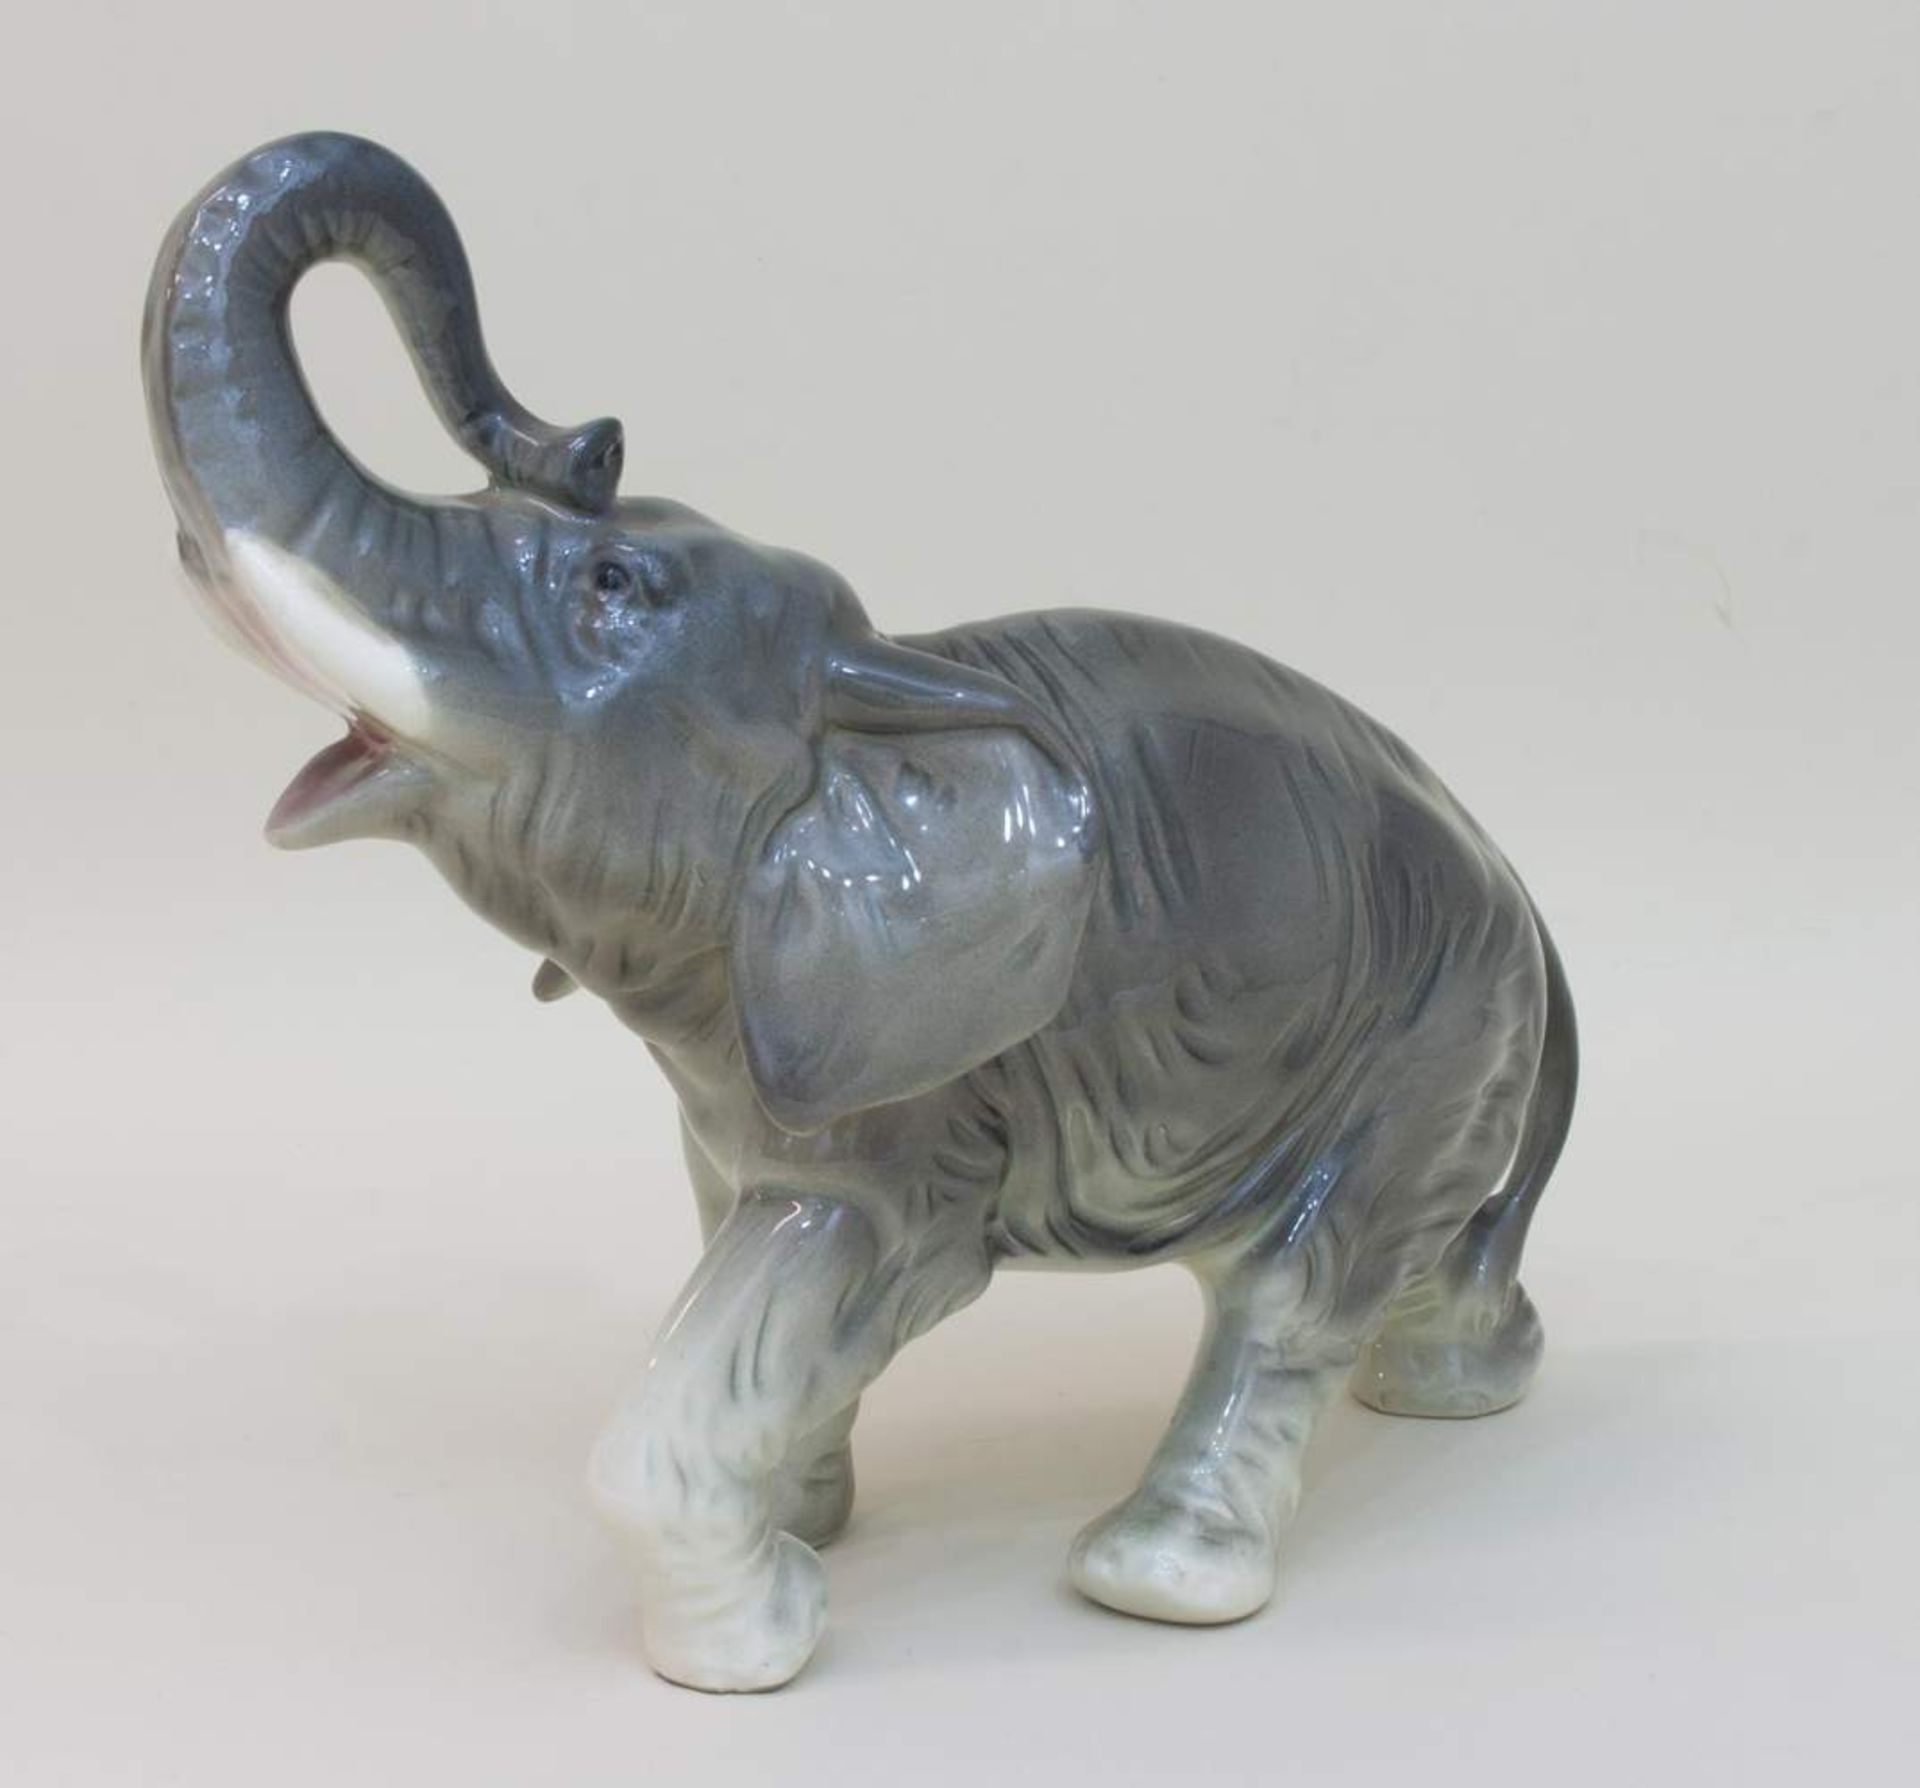 Elefantenfigur mit erhobenem Rüssel, unbekannt gemarkt, H. 24 cm - Bild 2 aus 2